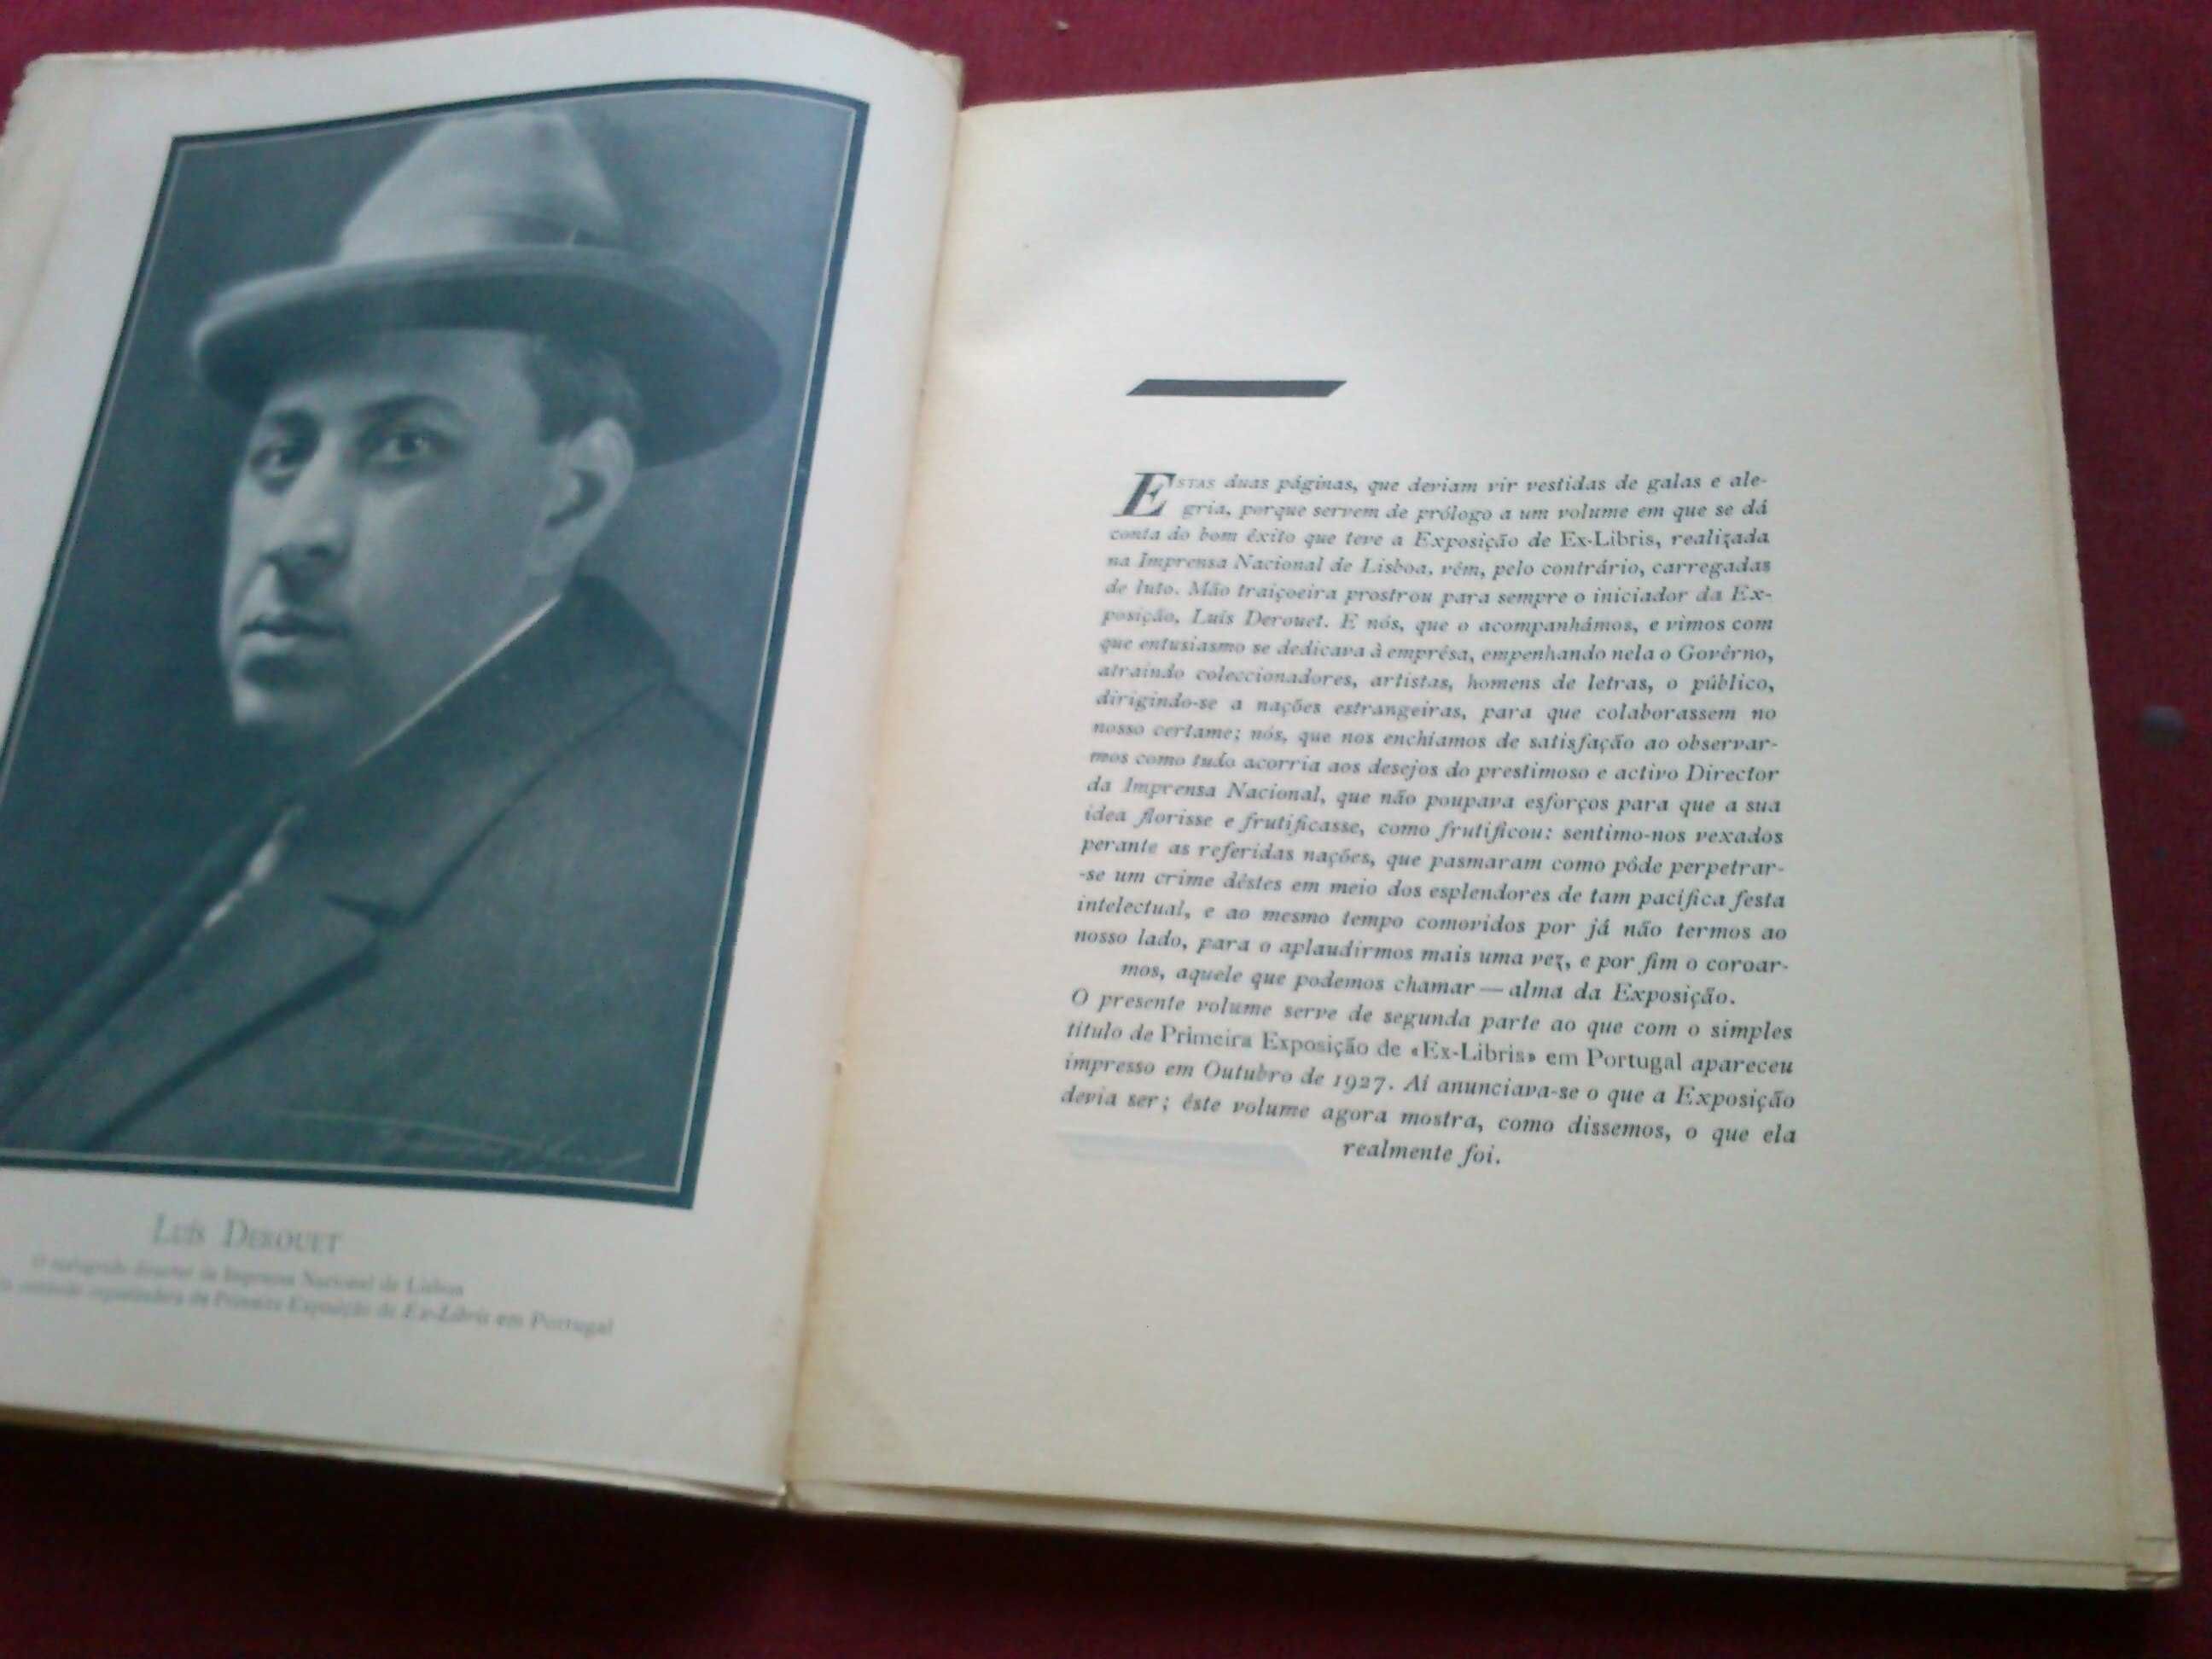 Primeira Exposição de «Ex-Libris» em Portugal-1927/28